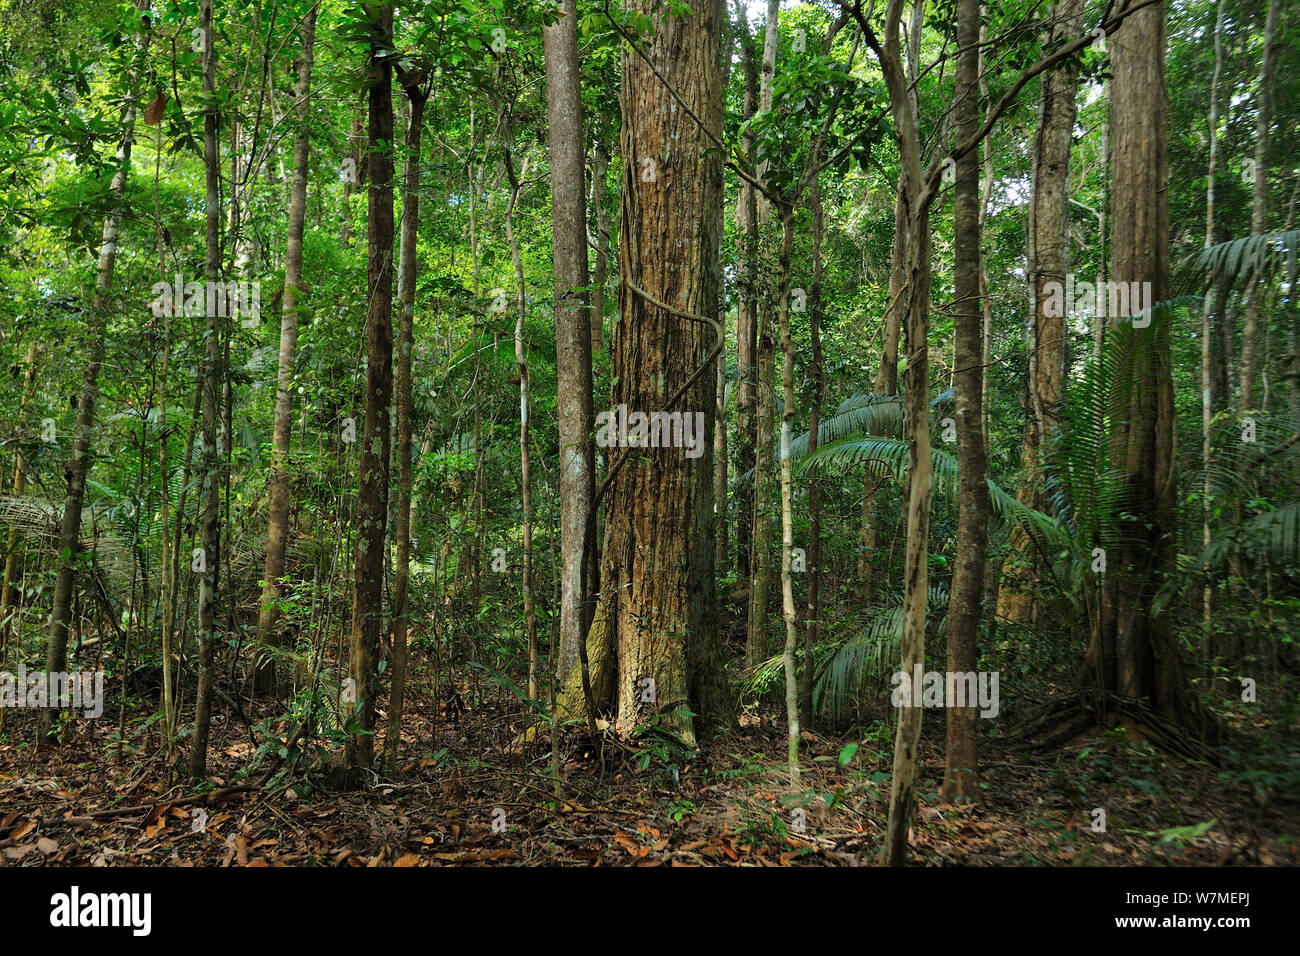 La Forêt Tropicale Atlantique plateau de Vale Parc Naturel, municipalité de Linhares, Espa-rito Santo Etat, l'Est du Brésil Janvier 2012. Banque D'Images